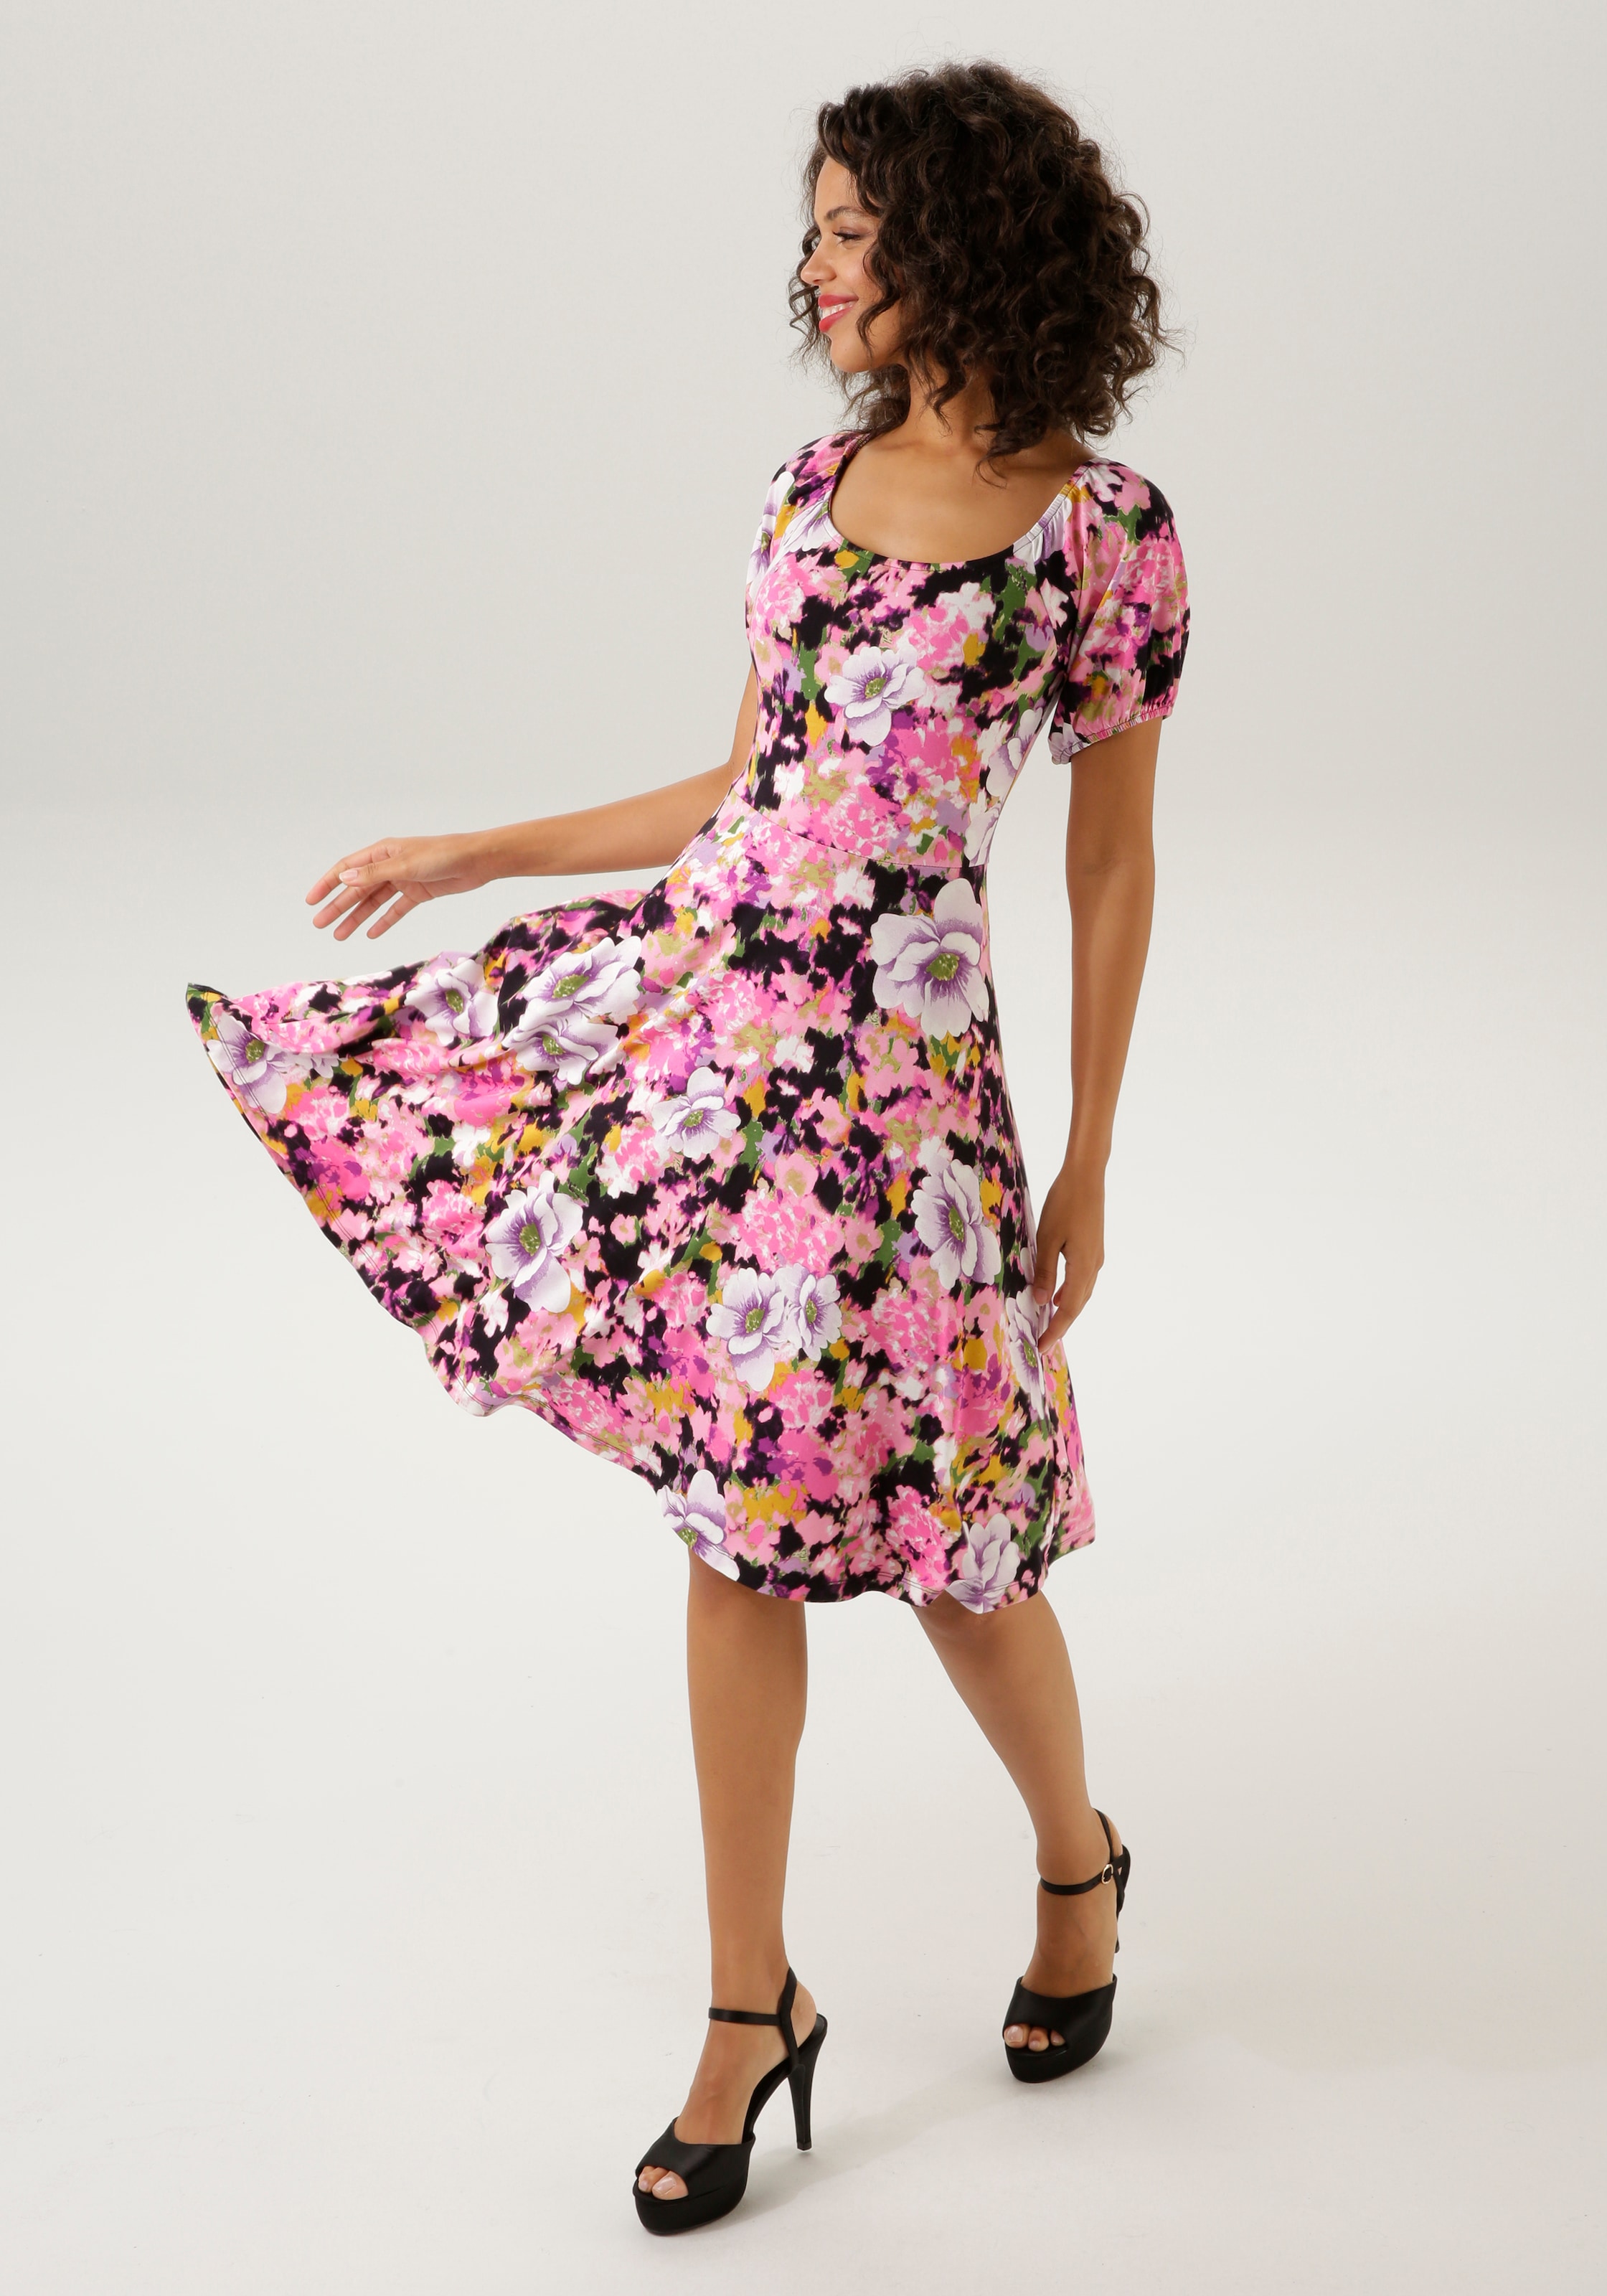 Online mit CASUAL NEUE KOLLEKTION - Blumendruck Sommerkleid, OTTO Unikat Aniston ein - jedes Teil Shop im farbenfrohem